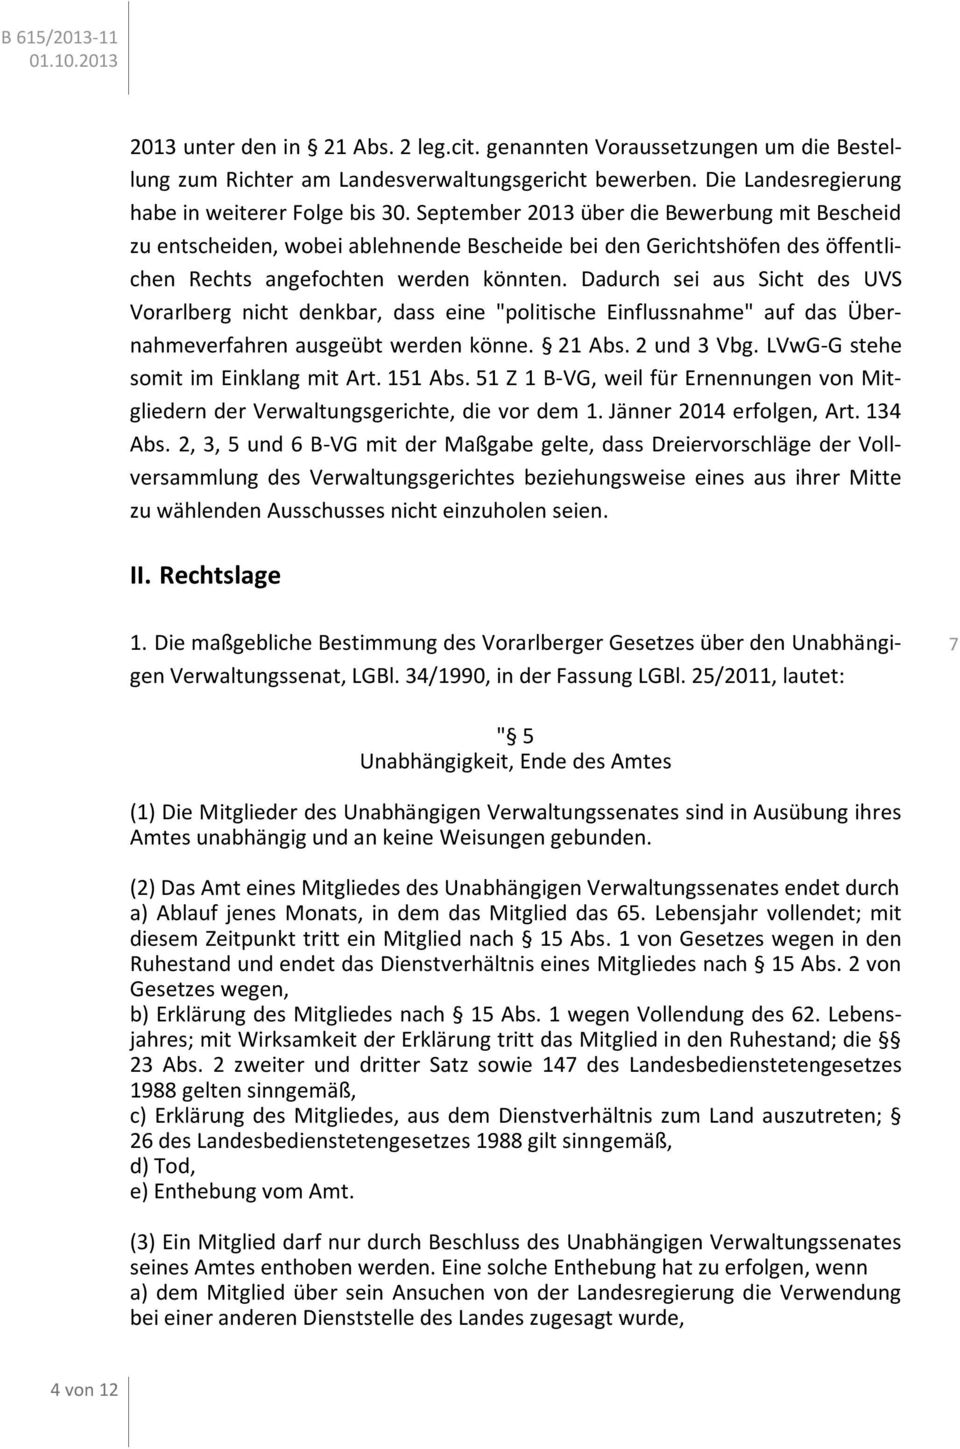 Dadurch sei aus Sicht des UVS Vorarlberg nicht denkbar, dass eine "politische Einflussnahme" auf das Übernahmeverfahren ausgeübt werden könne. 21 Abs. 2 und 3 Vbg.